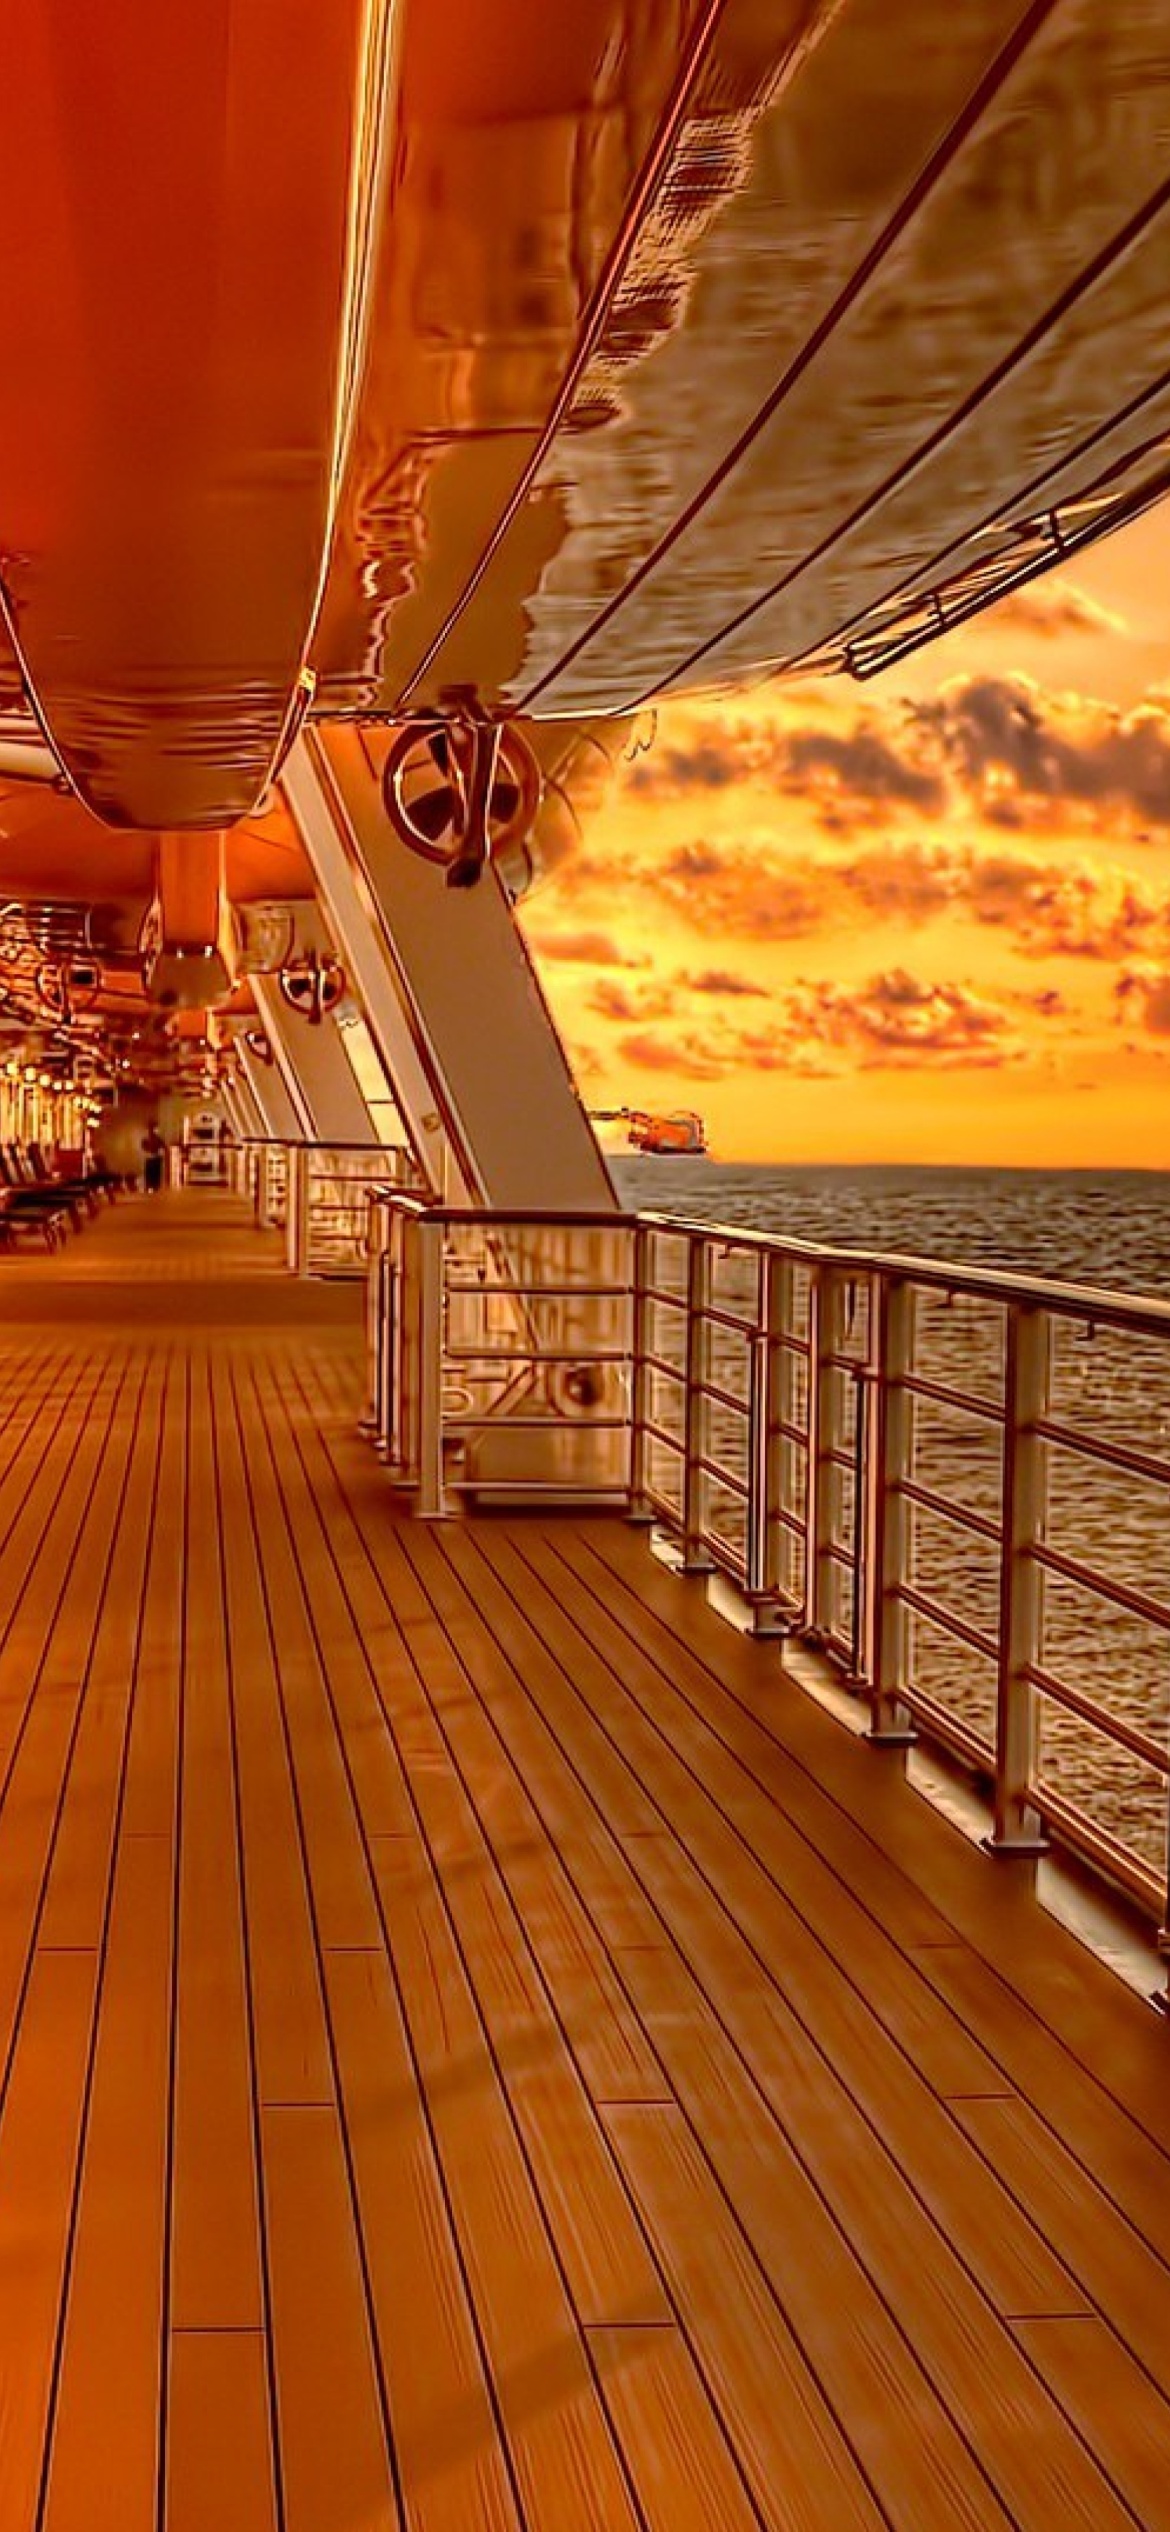 Обои Sunset on posh cruise ship 1170x2532